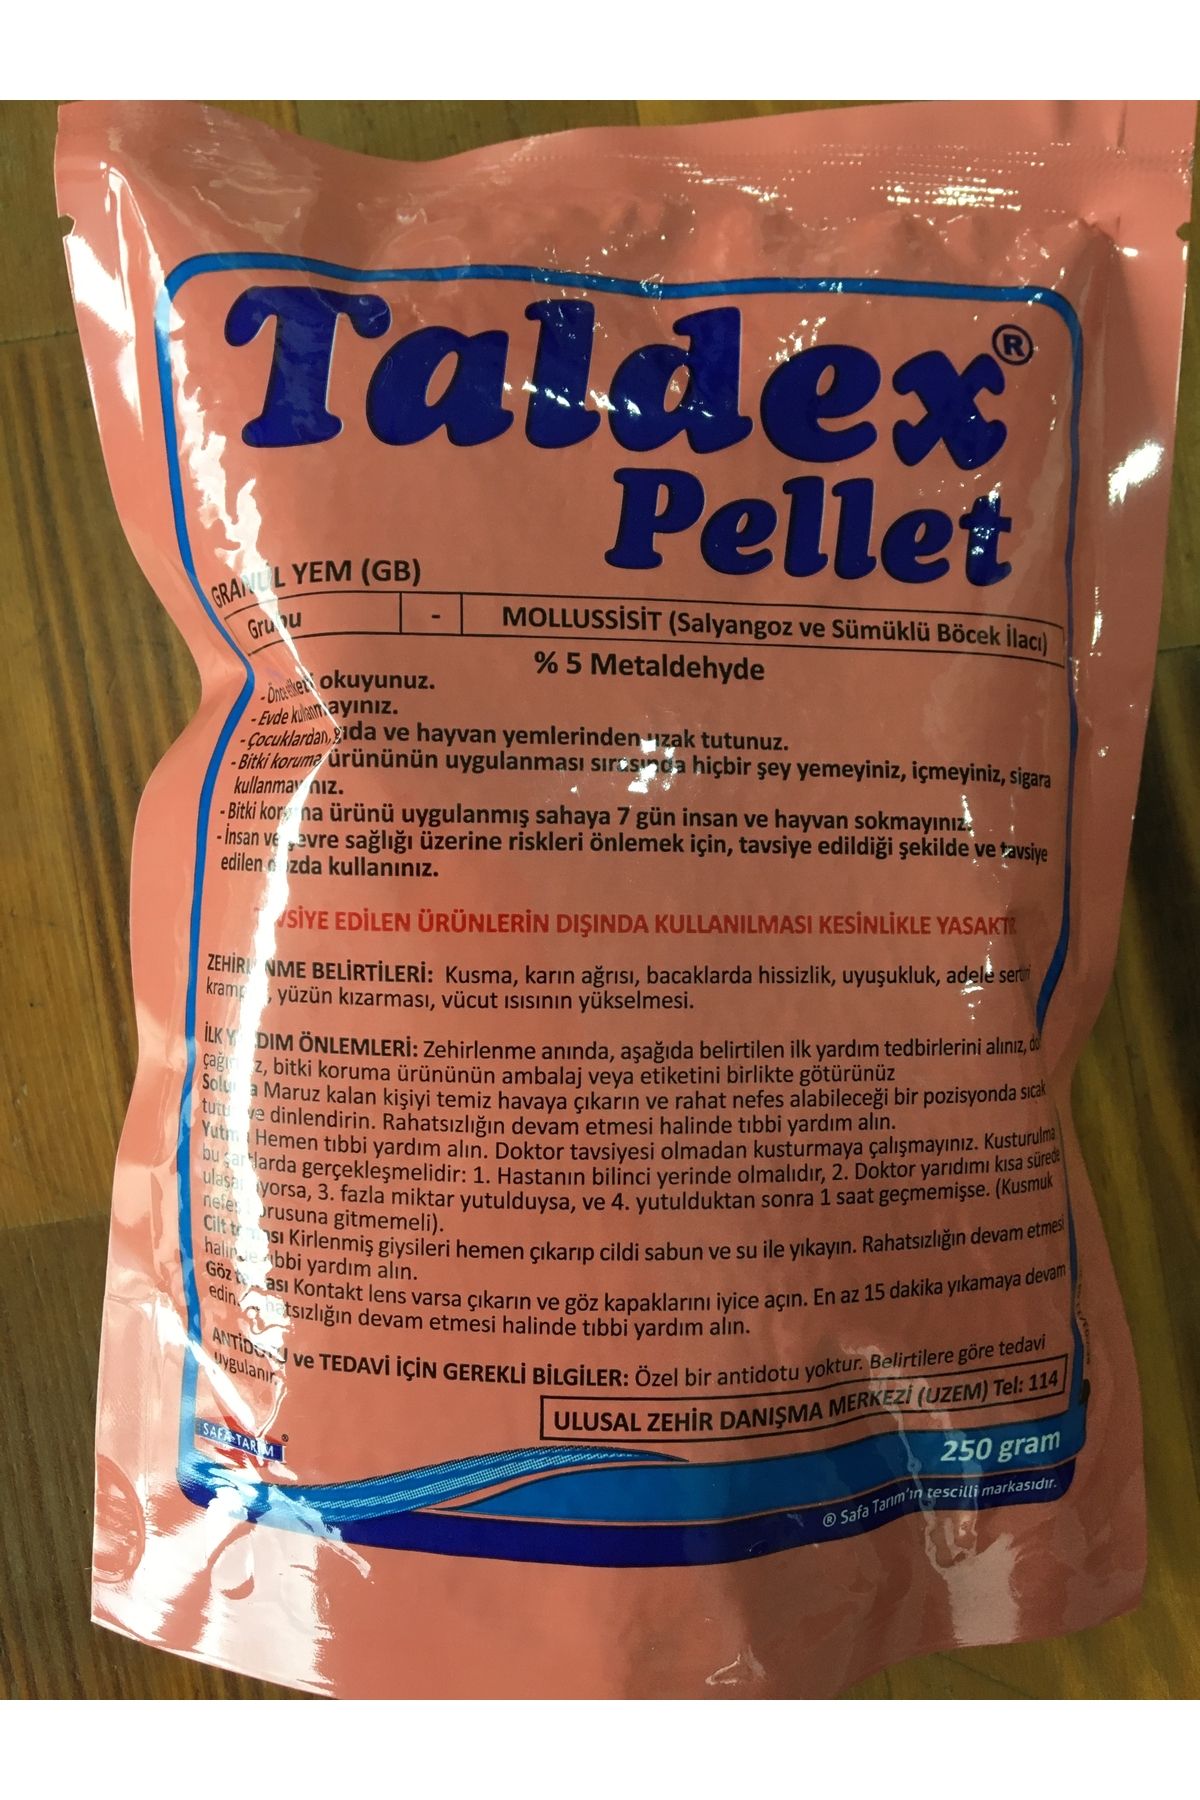 TALDEX PELLET 250gr. Salyangoz ve sümüklü böcek ilacı